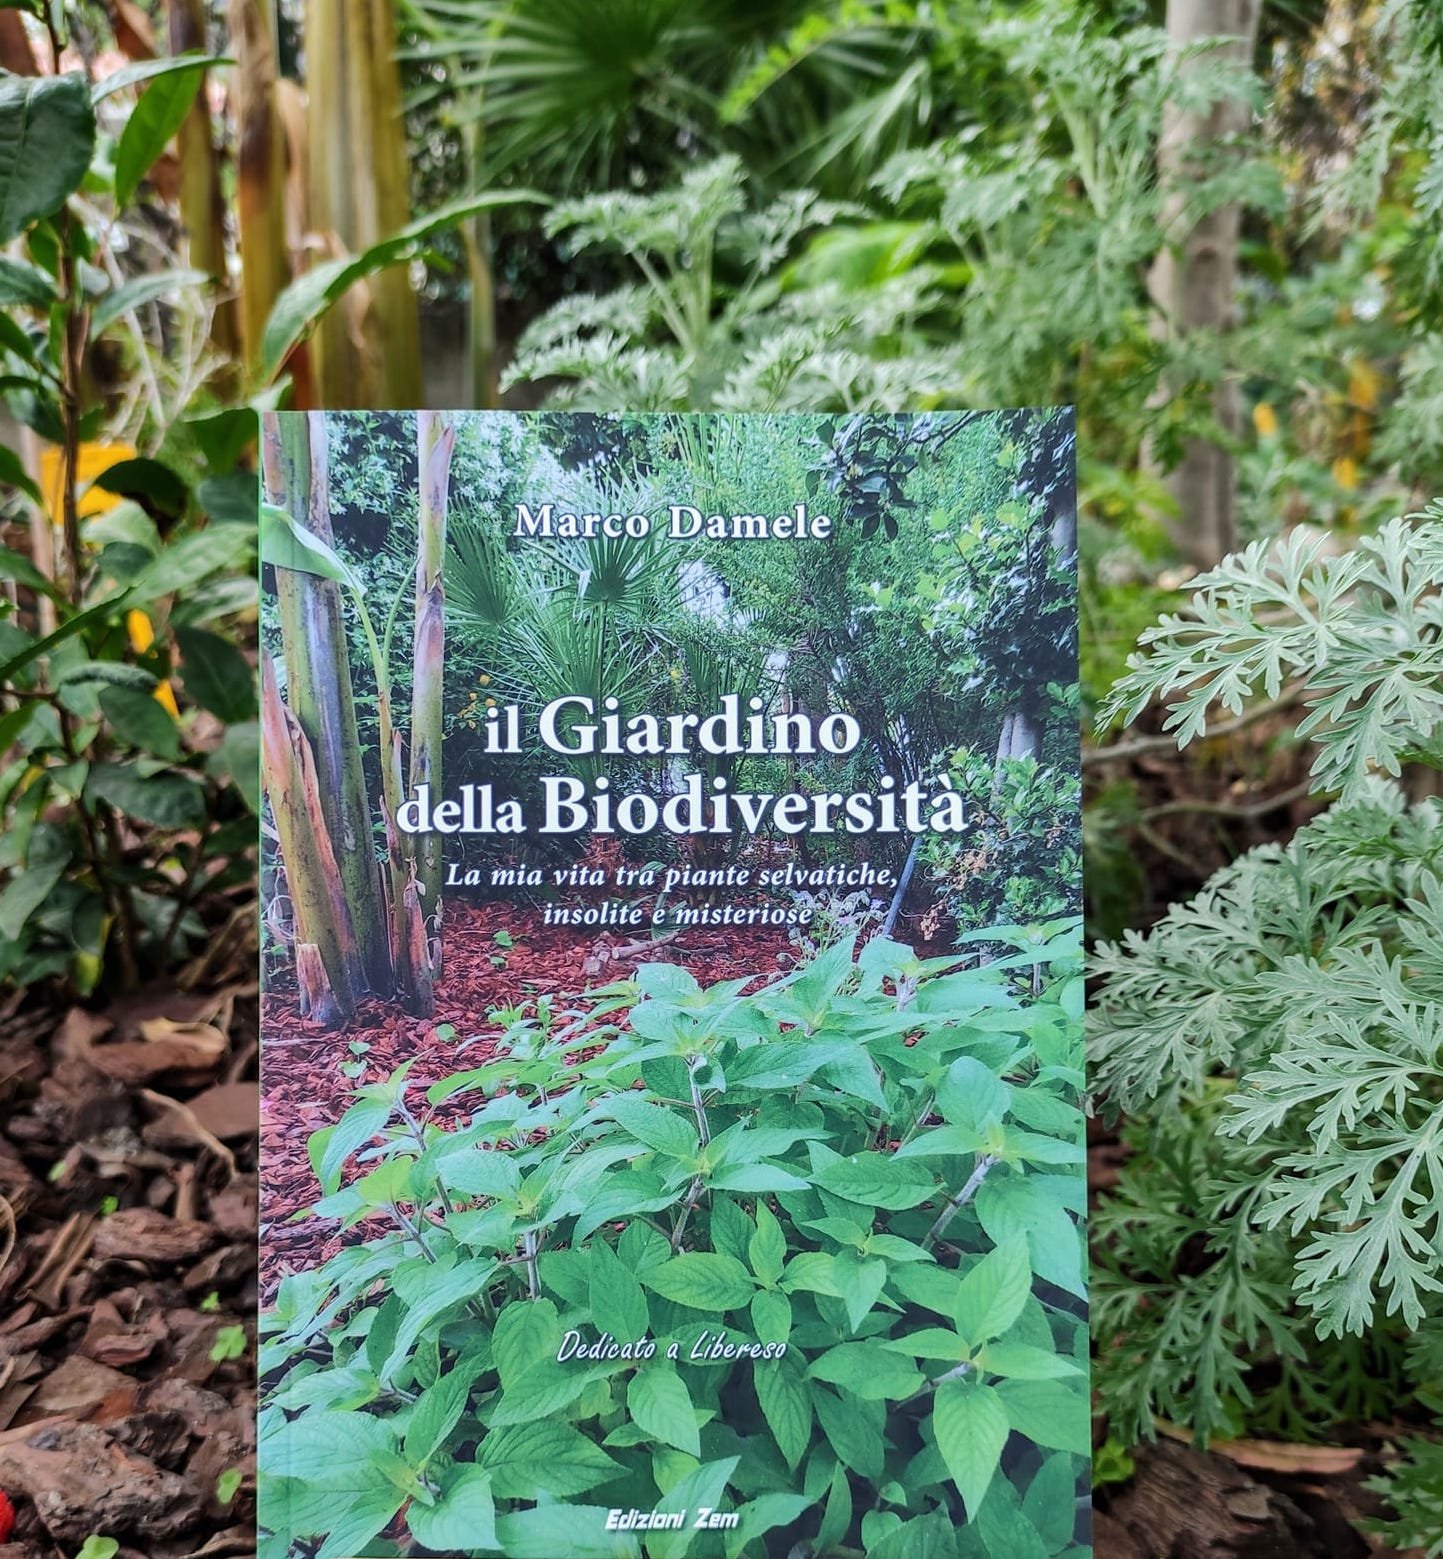 Il nuovo libro di Marco Damele ha per titolo “Il giardino della Biodiversità”